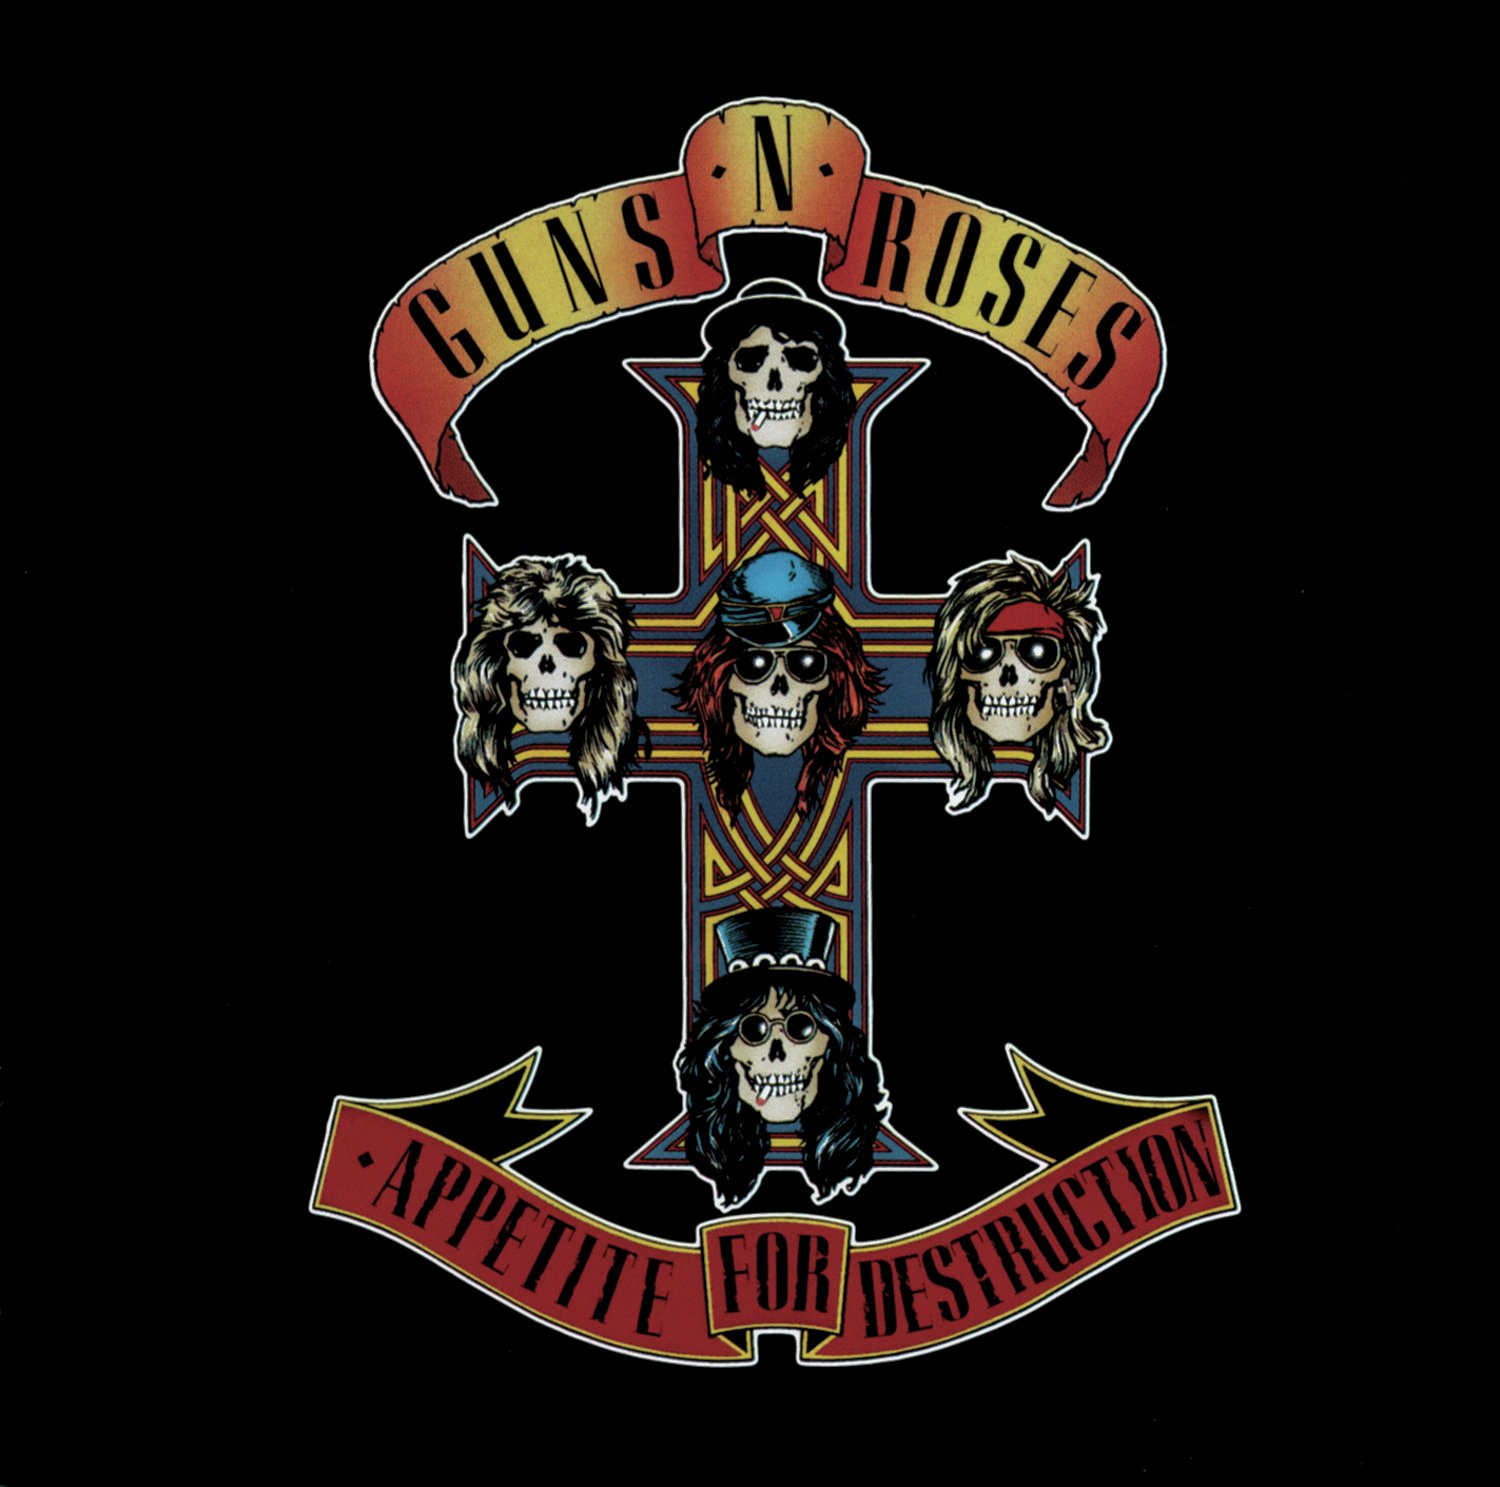 Guns N' Roses Appetite For Destruction Vinyl Review